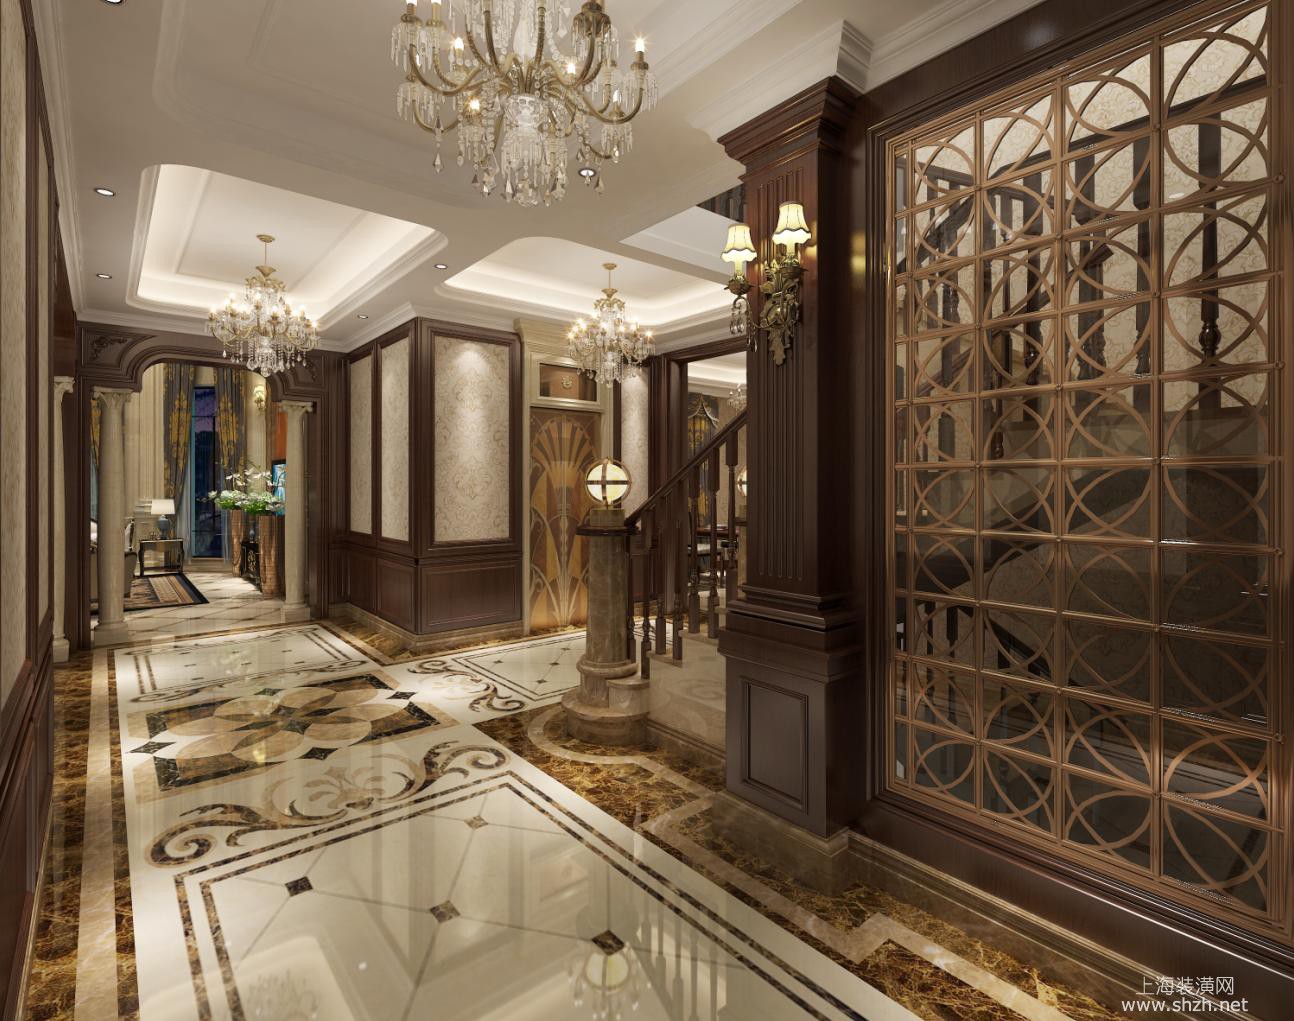 香水湾别墅项目装修设计案例展示,上海腾龙别墅设计师孔继民作品,欢迎